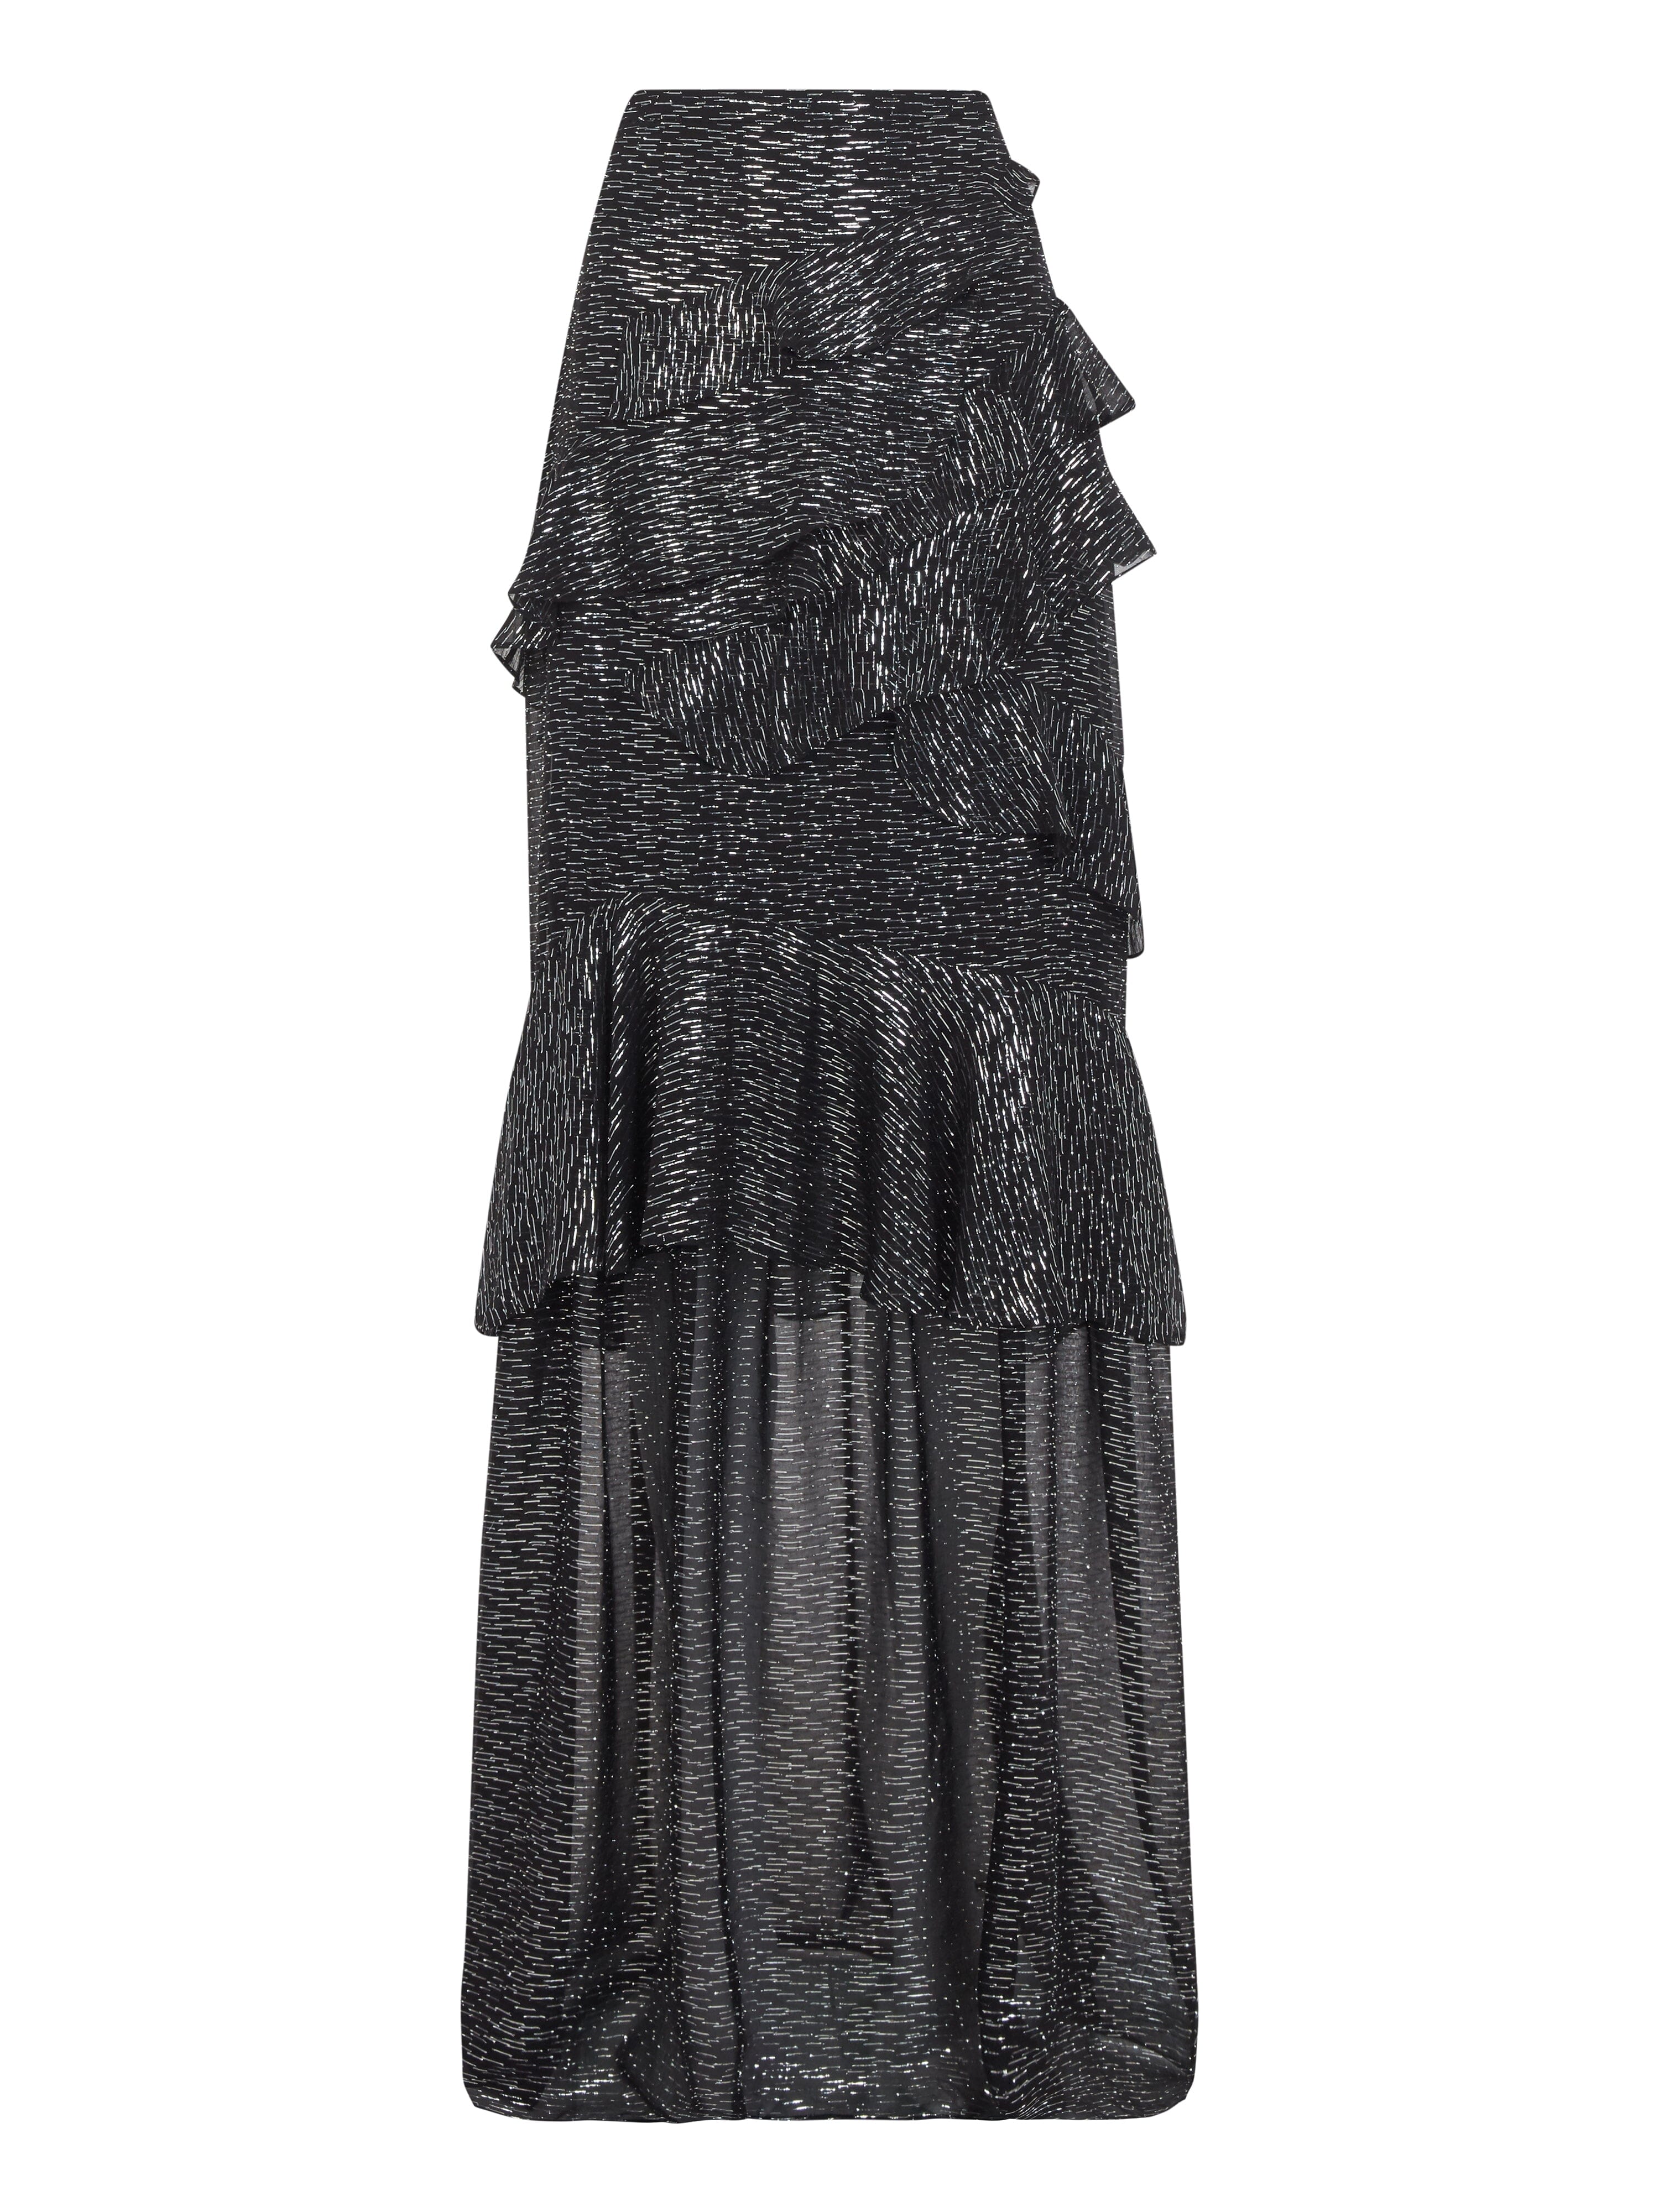 Marissa Long Skirt in Black Silver